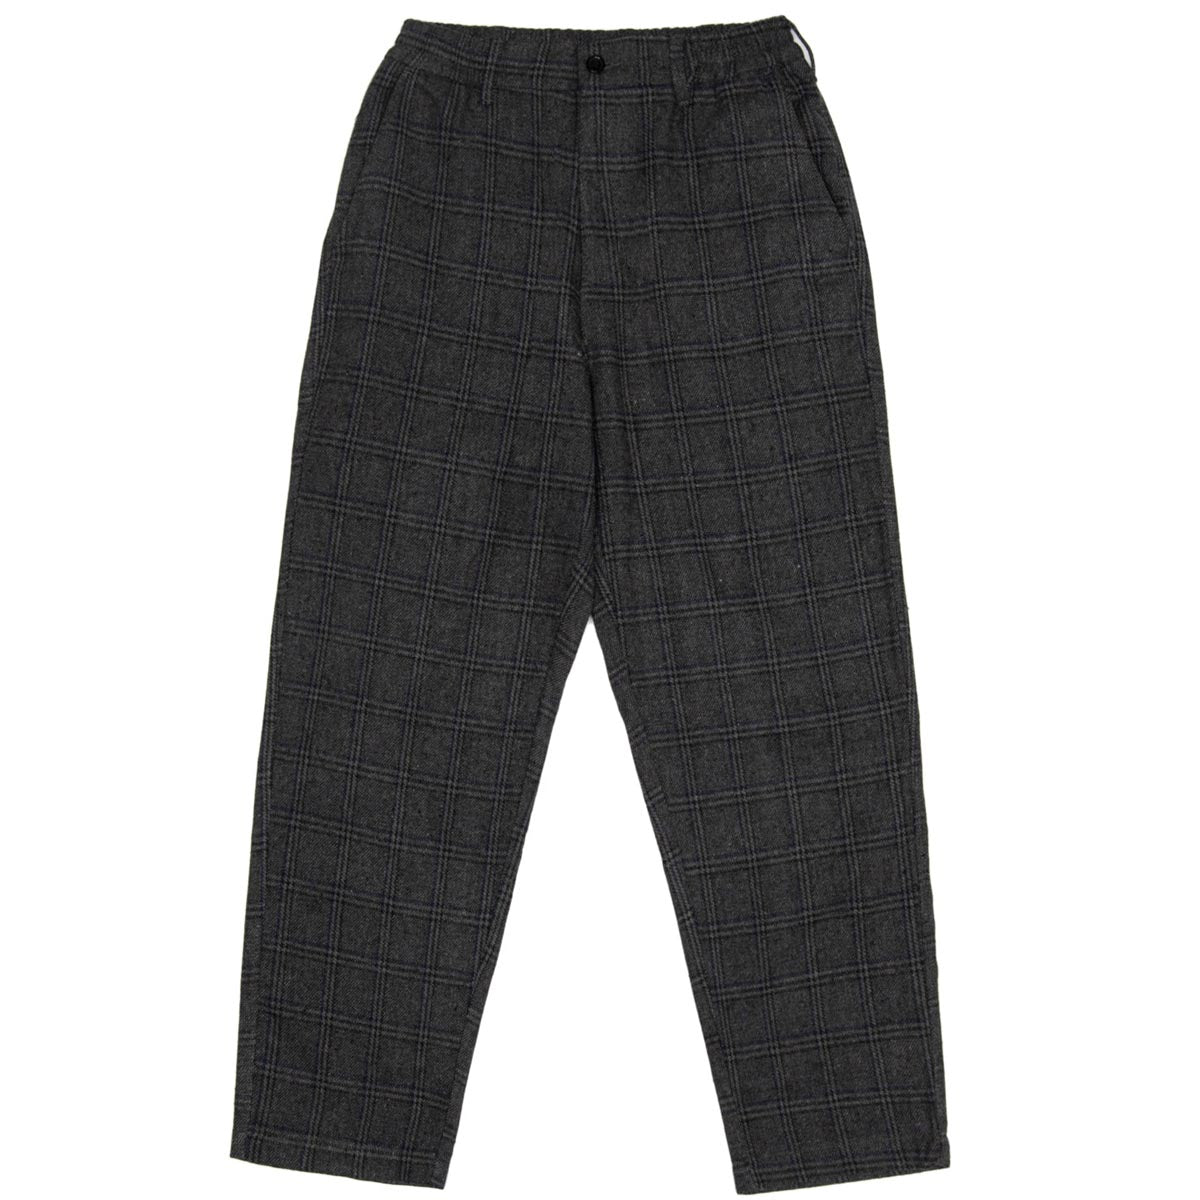 WKND Loosies Pants - Grey Check image 1